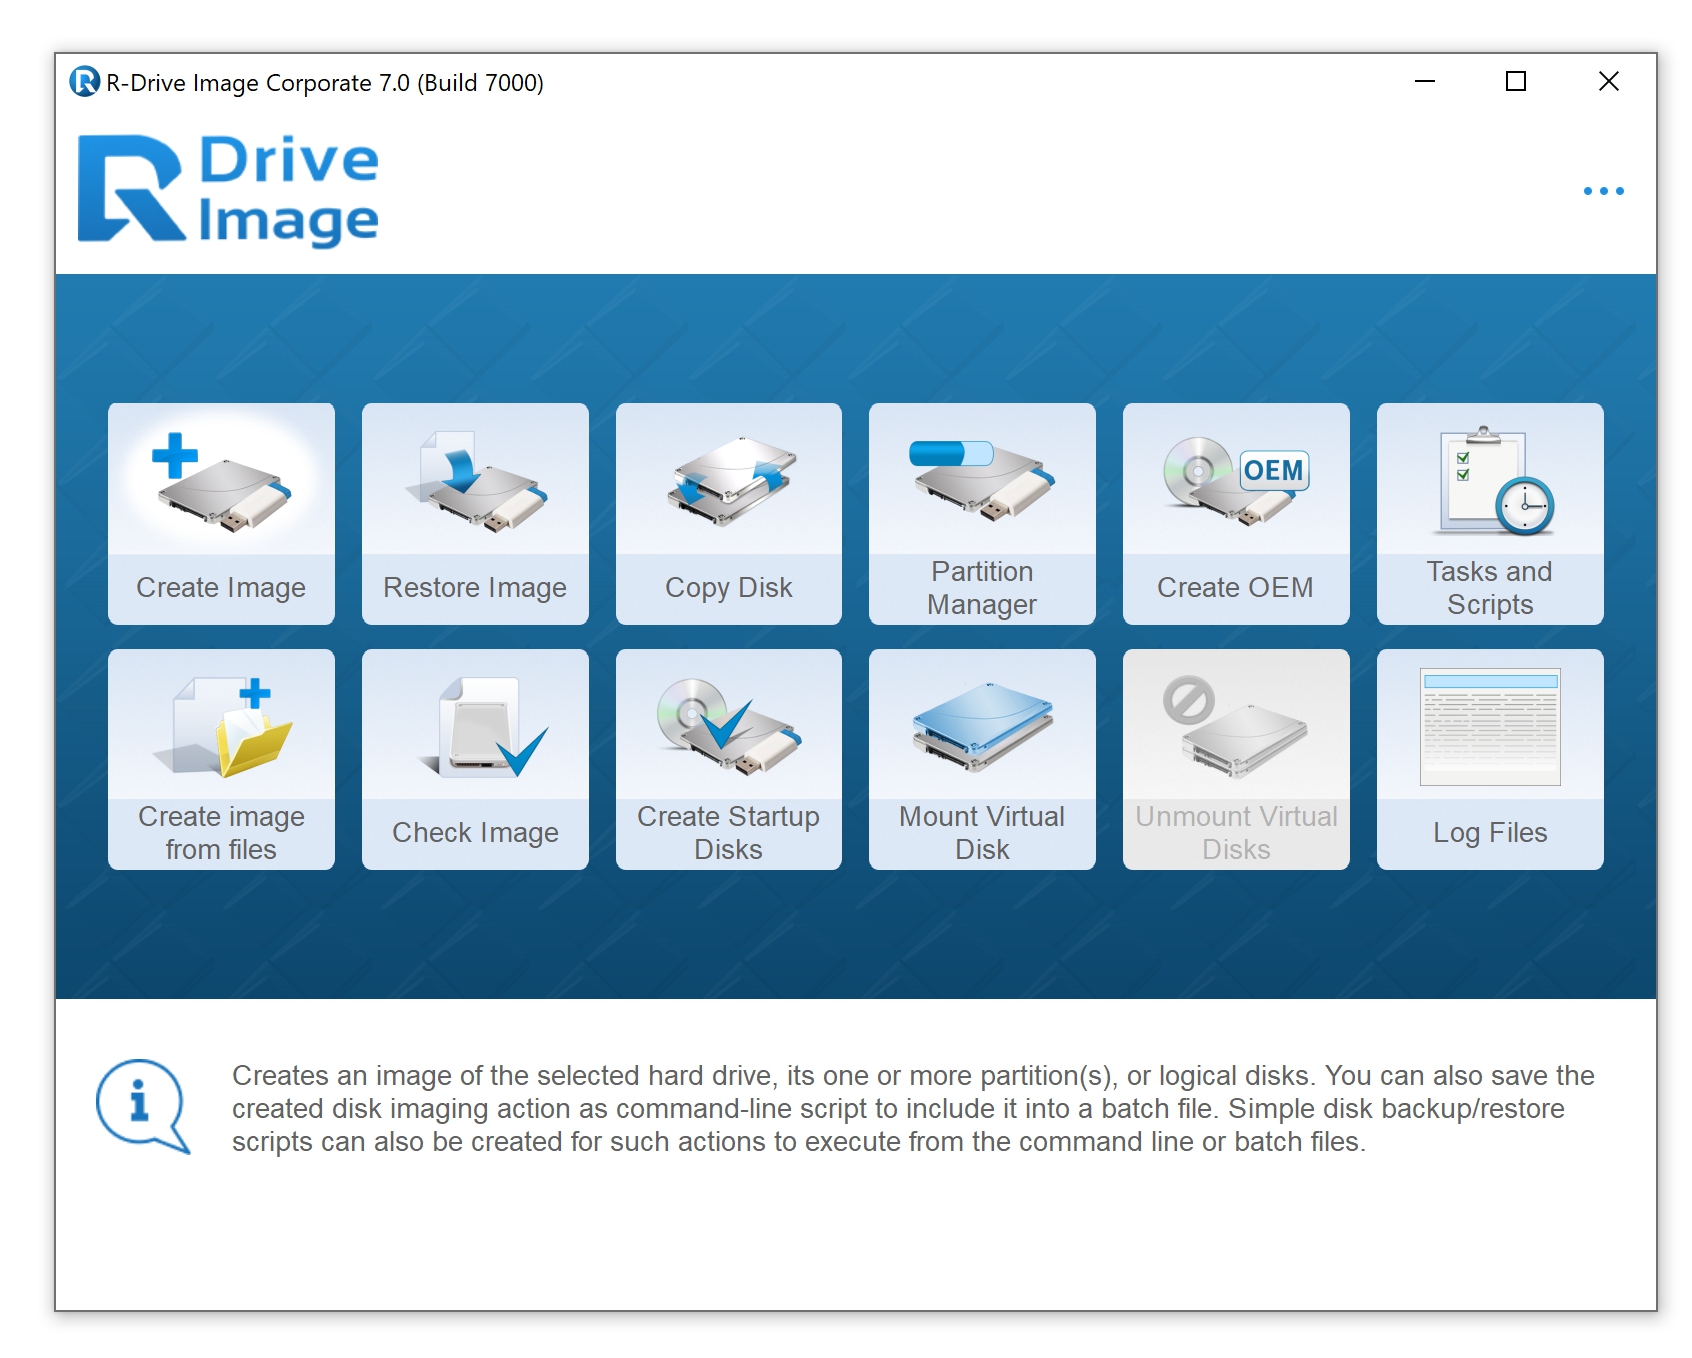 R-Drive Afbeelding 7 - Over het algemeen de beste Windows-back-up